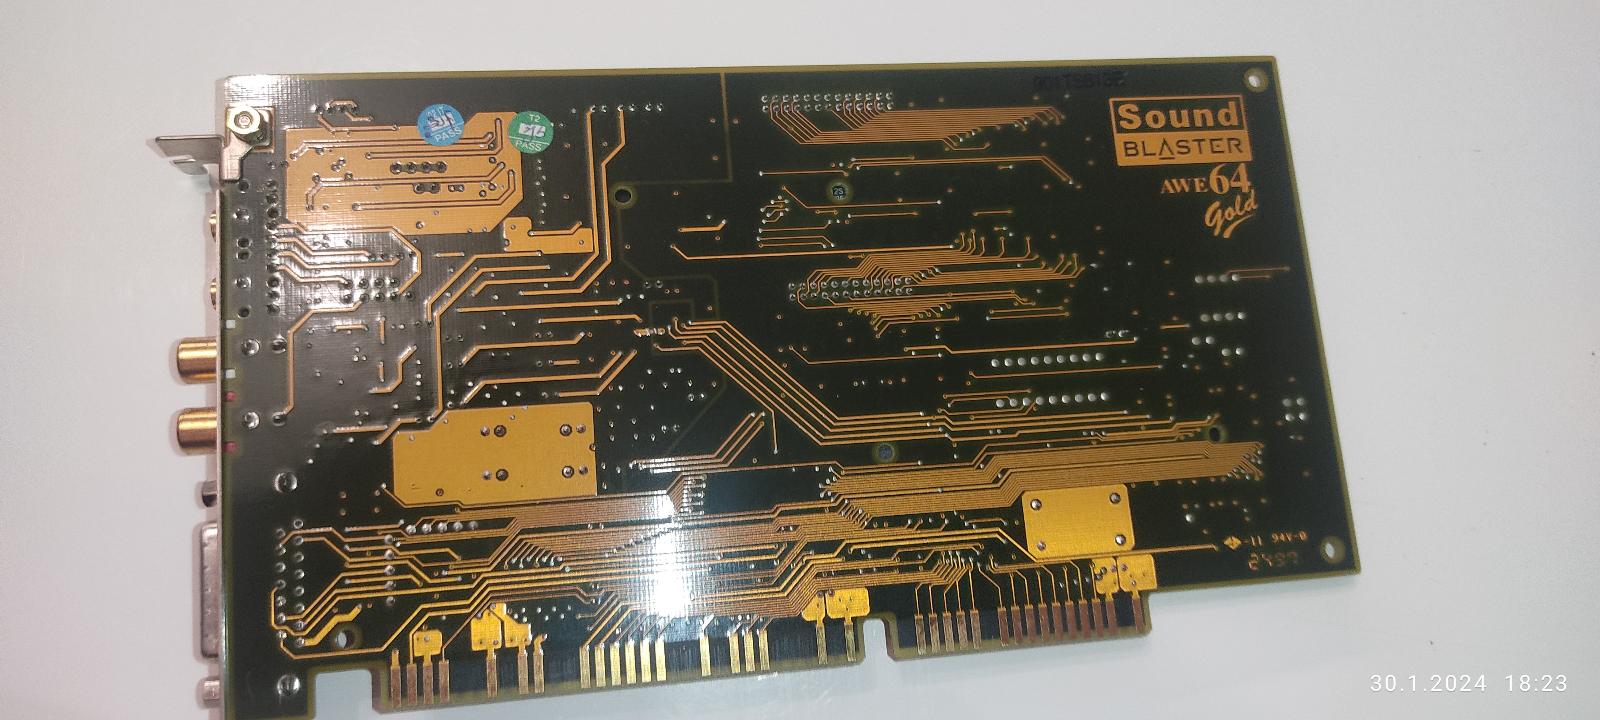 Zvuková karta Sound Blaster AWE64 Gold - Počítače a hry